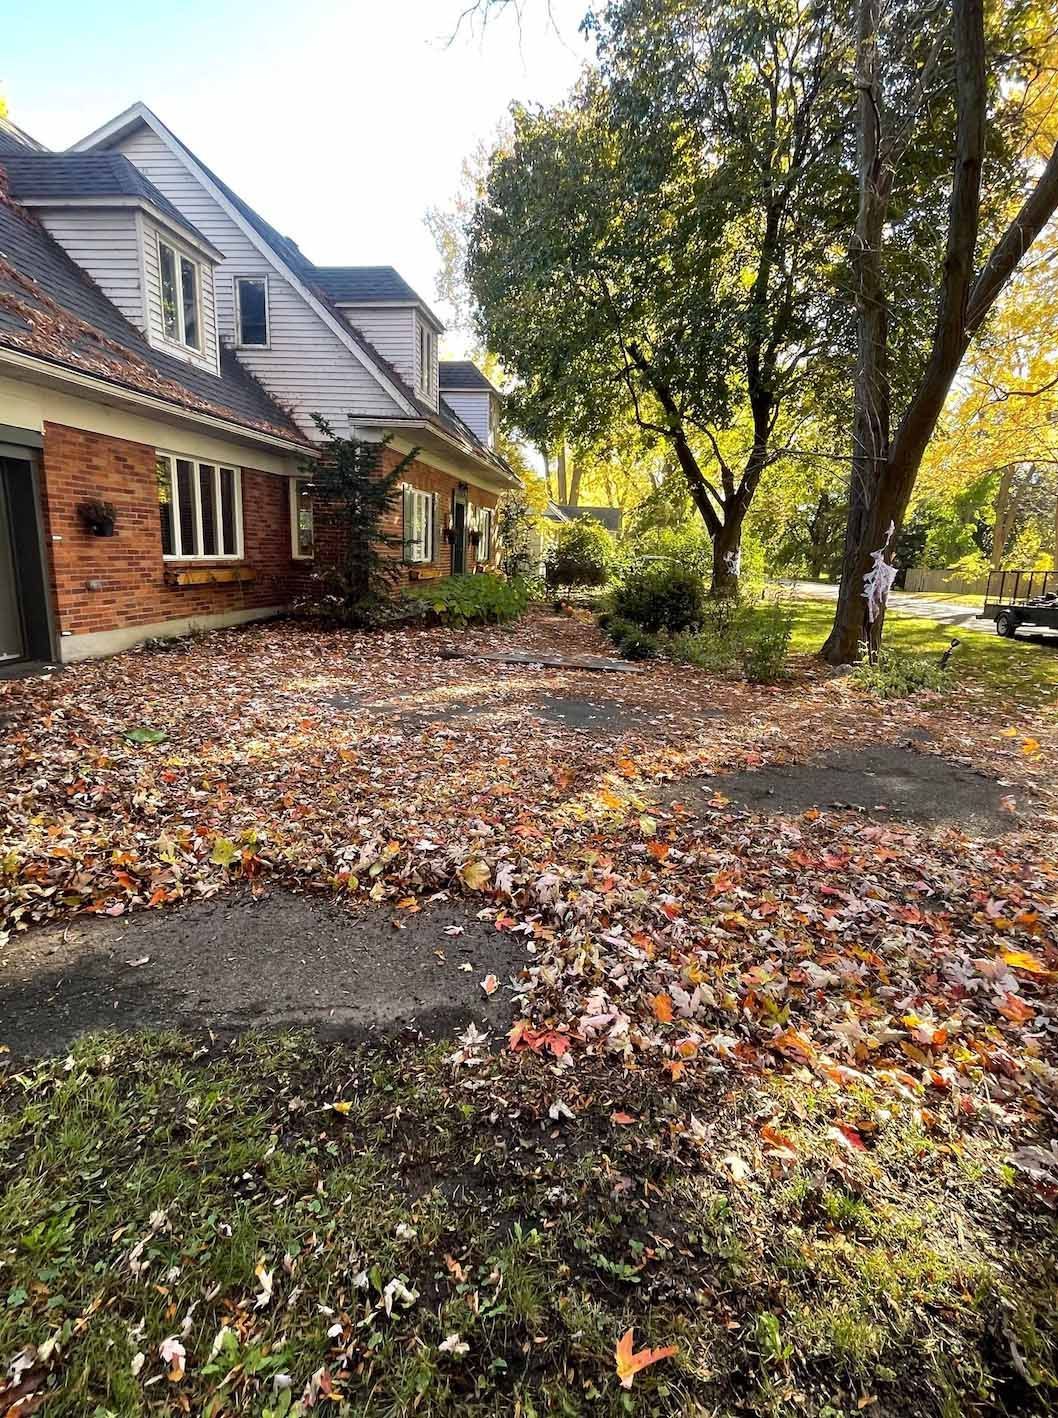 Une grande maison avec beaucoup de feuilles au sol devant.